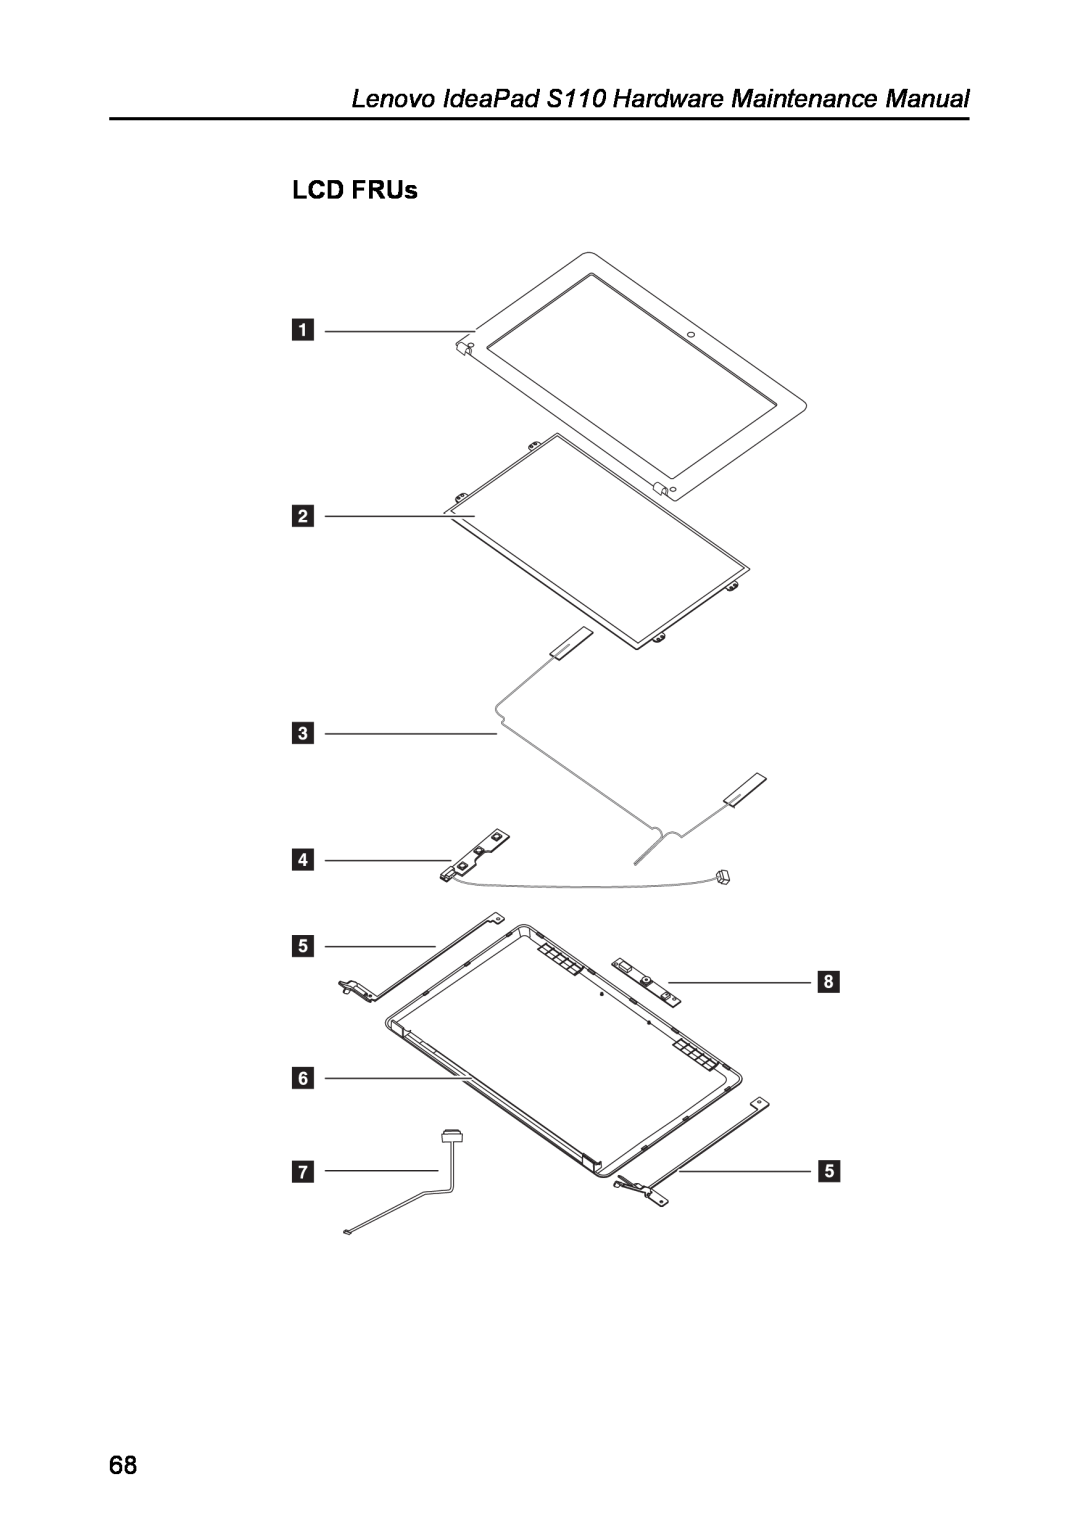 Lenovo manual LCD FRUs, Lenovo IdeaPad S110 Hardware Maintenance Manual 